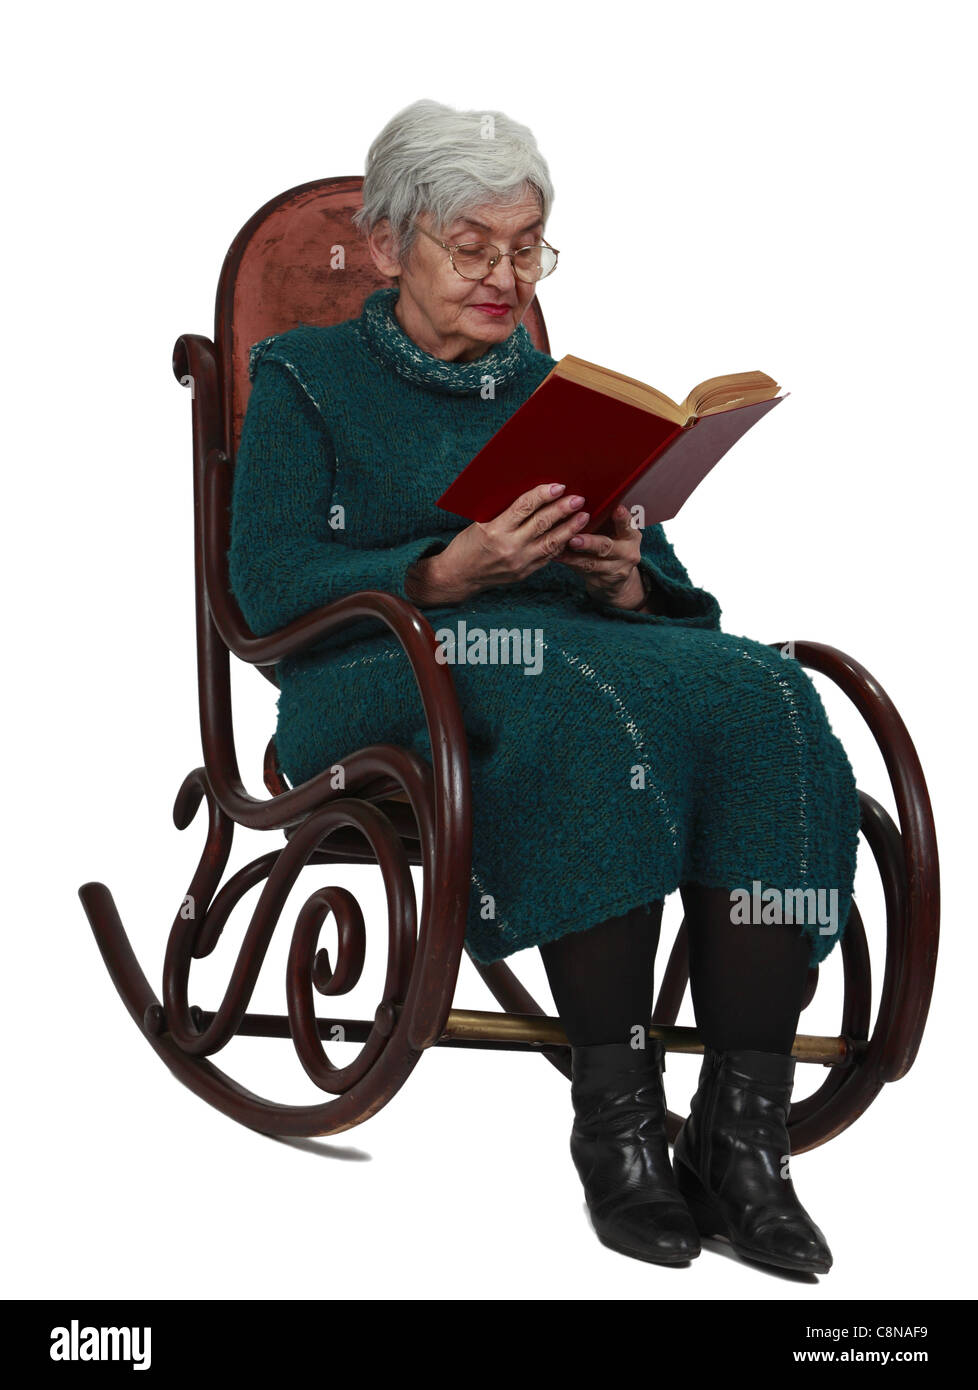 Alte Frau liest ein schwarzes Buch während der Sitzung in einer Wippe, isoliert auf einem weißen Hintergrund. Stockfoto